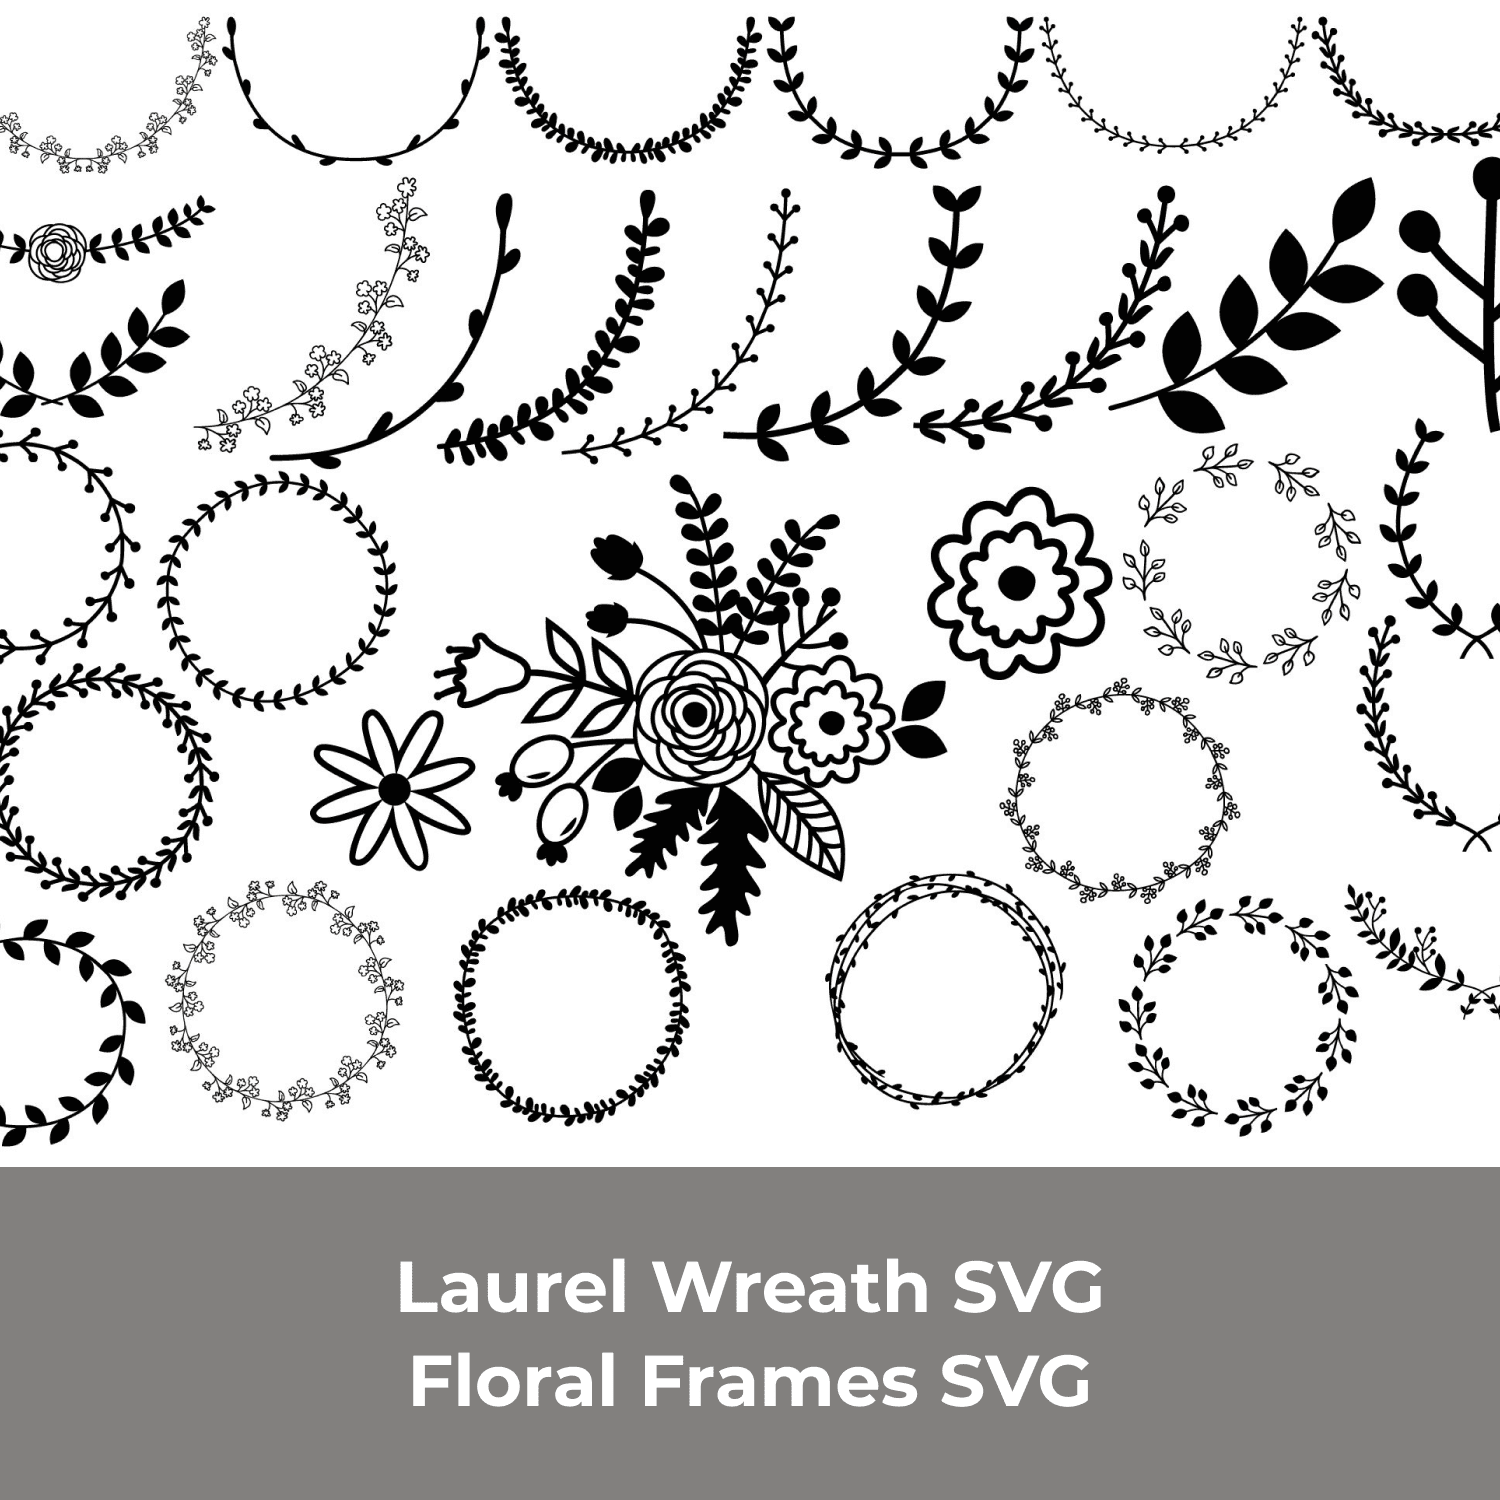 Laurel Wreath SVG, Floral Frames SVG cover.